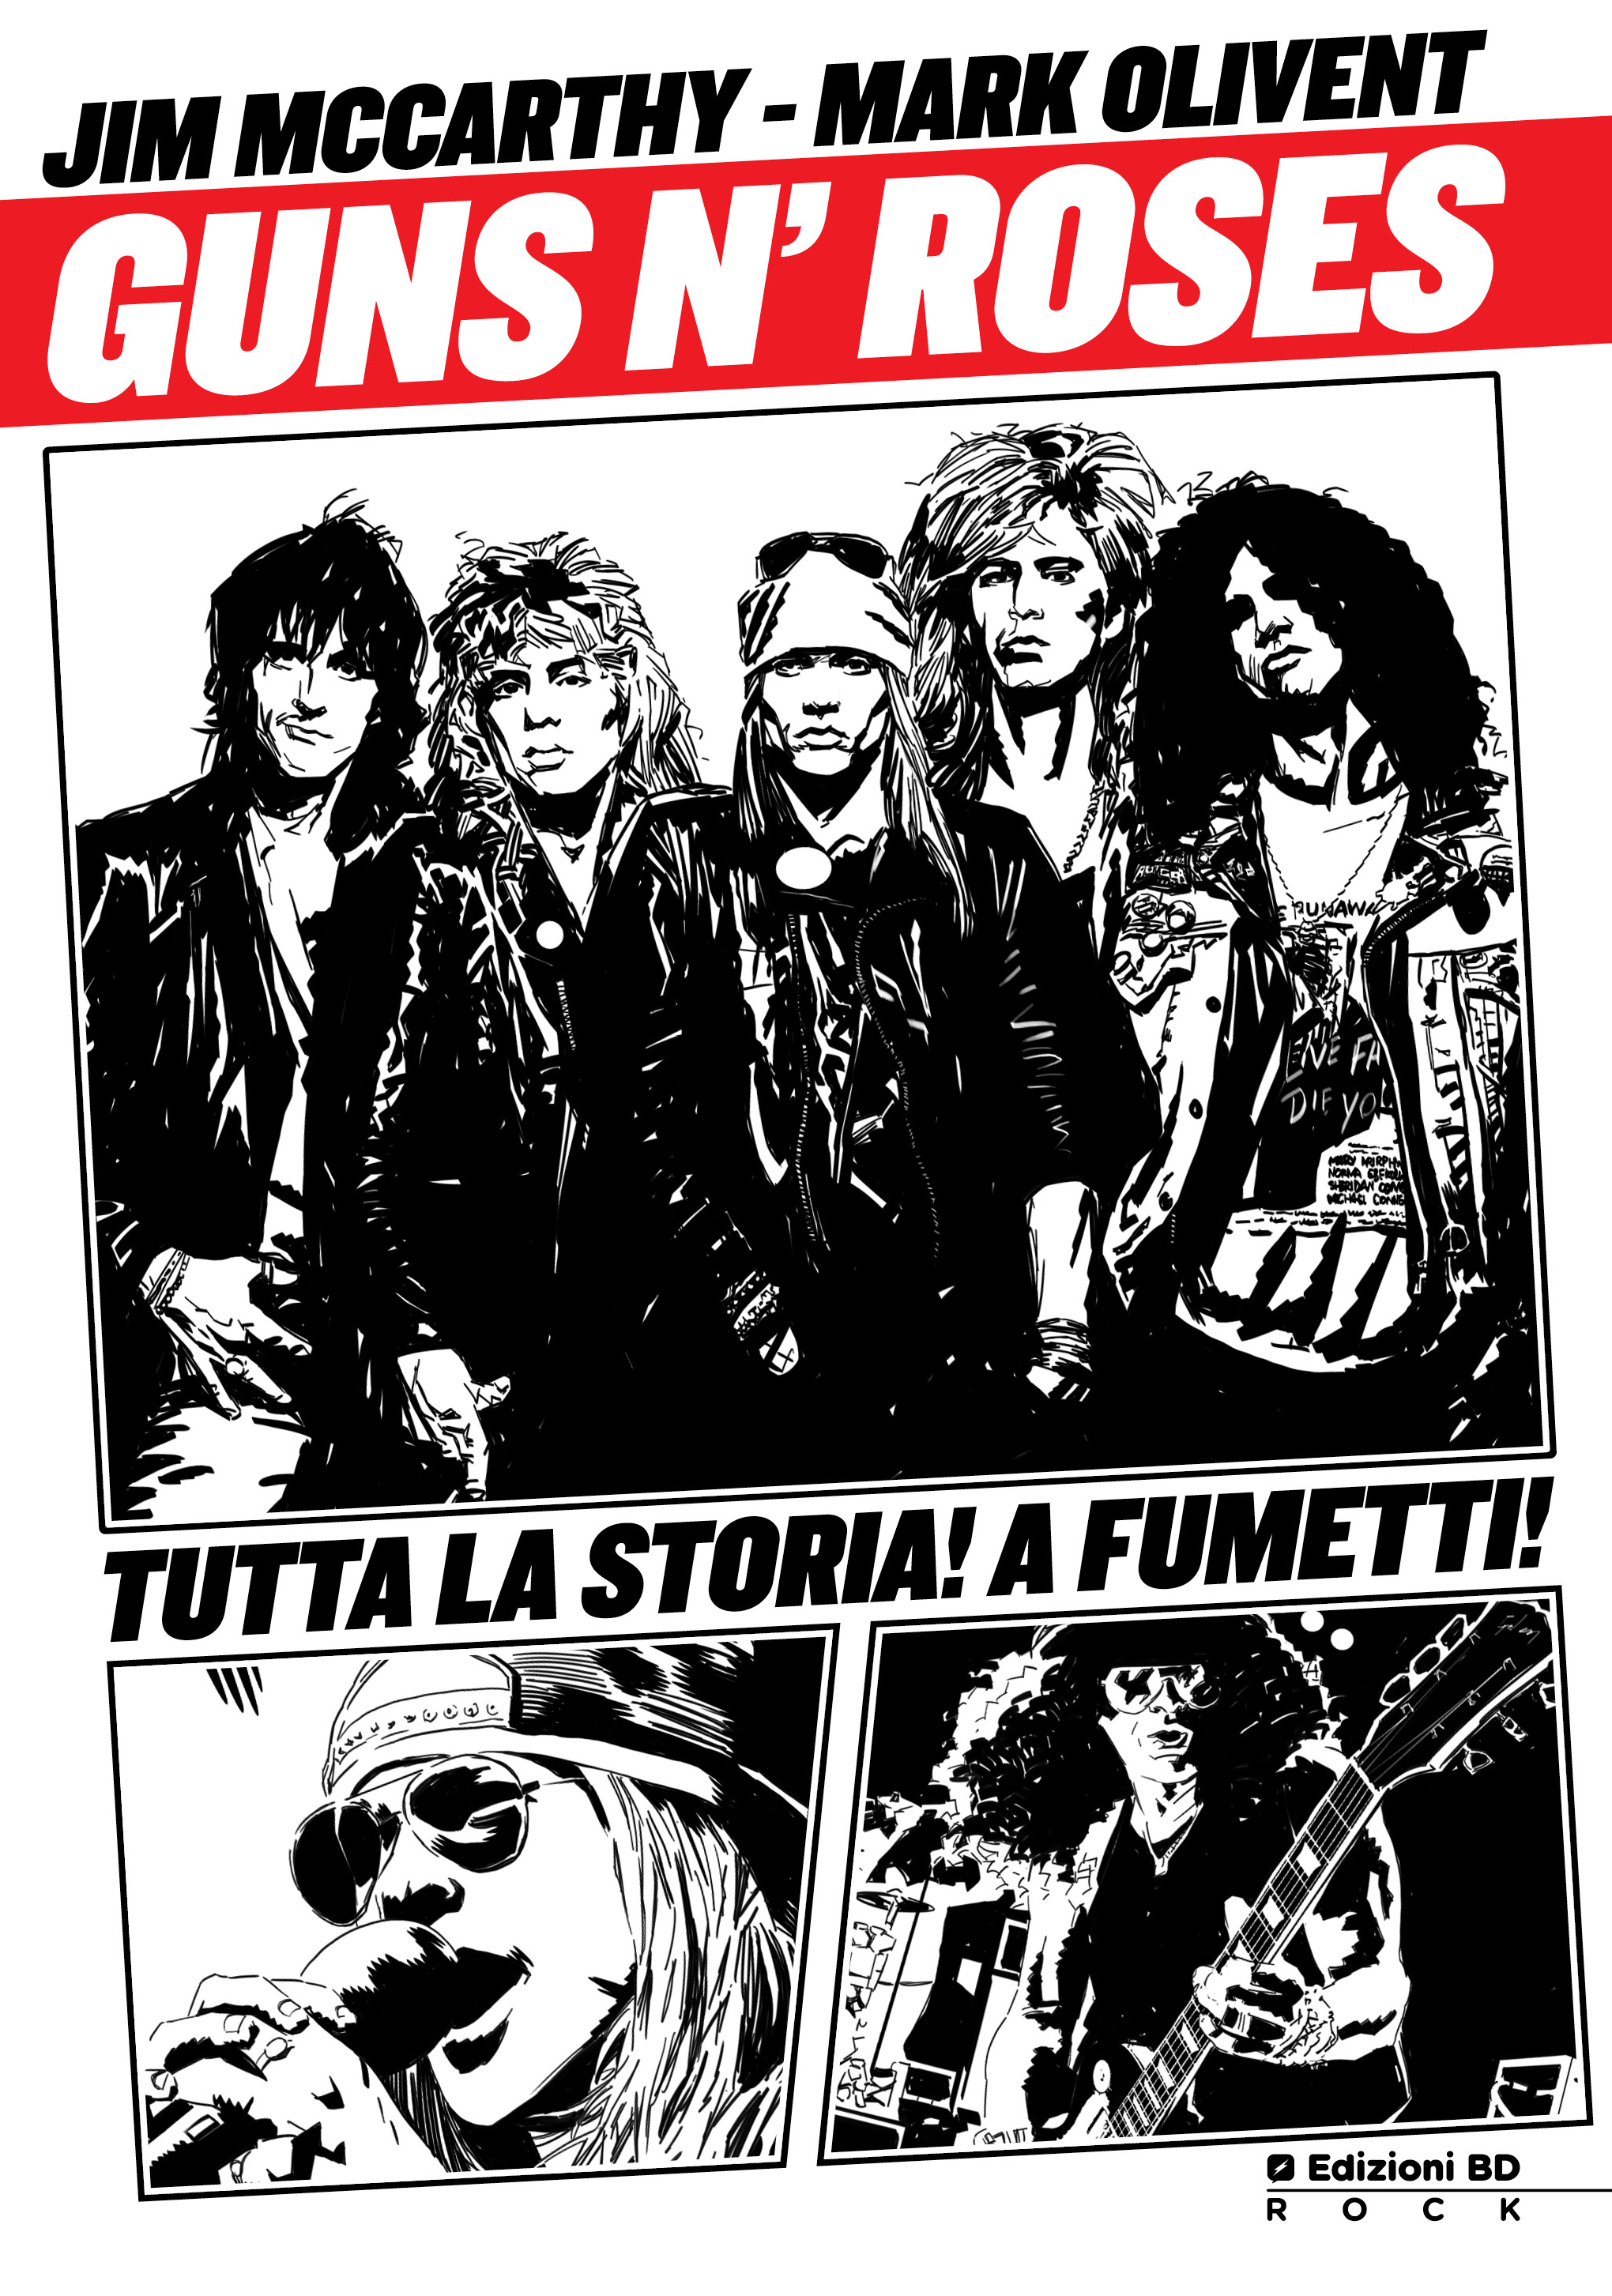 la copertina del fumetto sui Guns N' Roses pubblicato da Edizioni BD